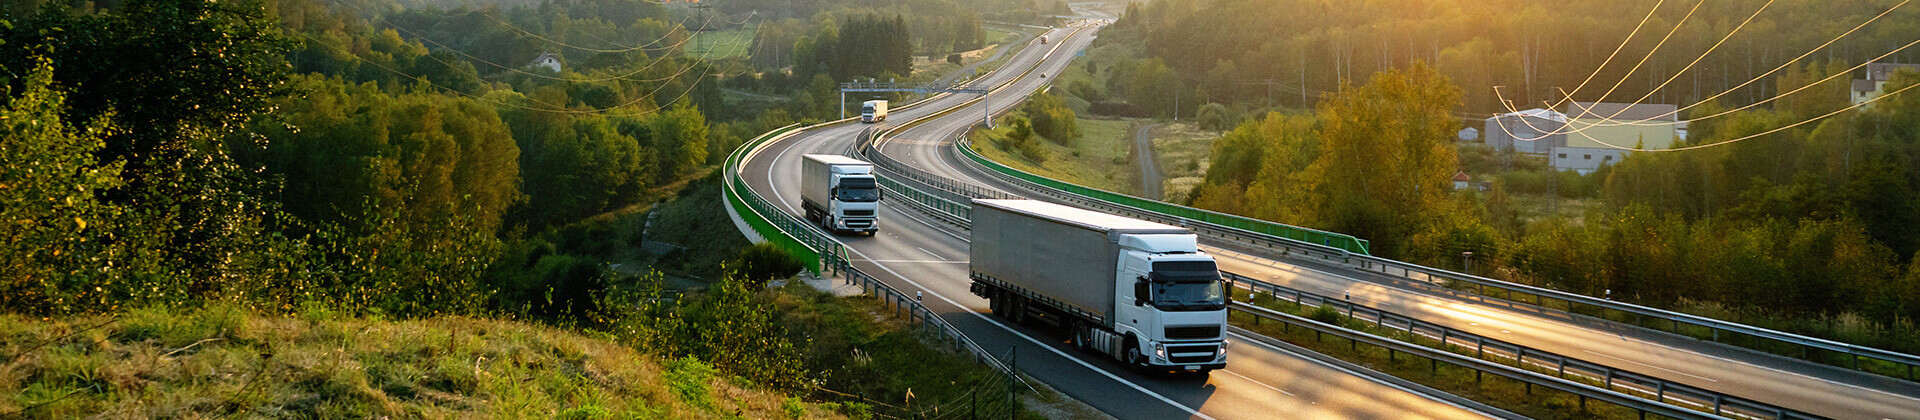 Zwei Lastwagen fahren im Sonnenuntergang auf einer Autobahn, die von grünen Wäldern umgeben ist.